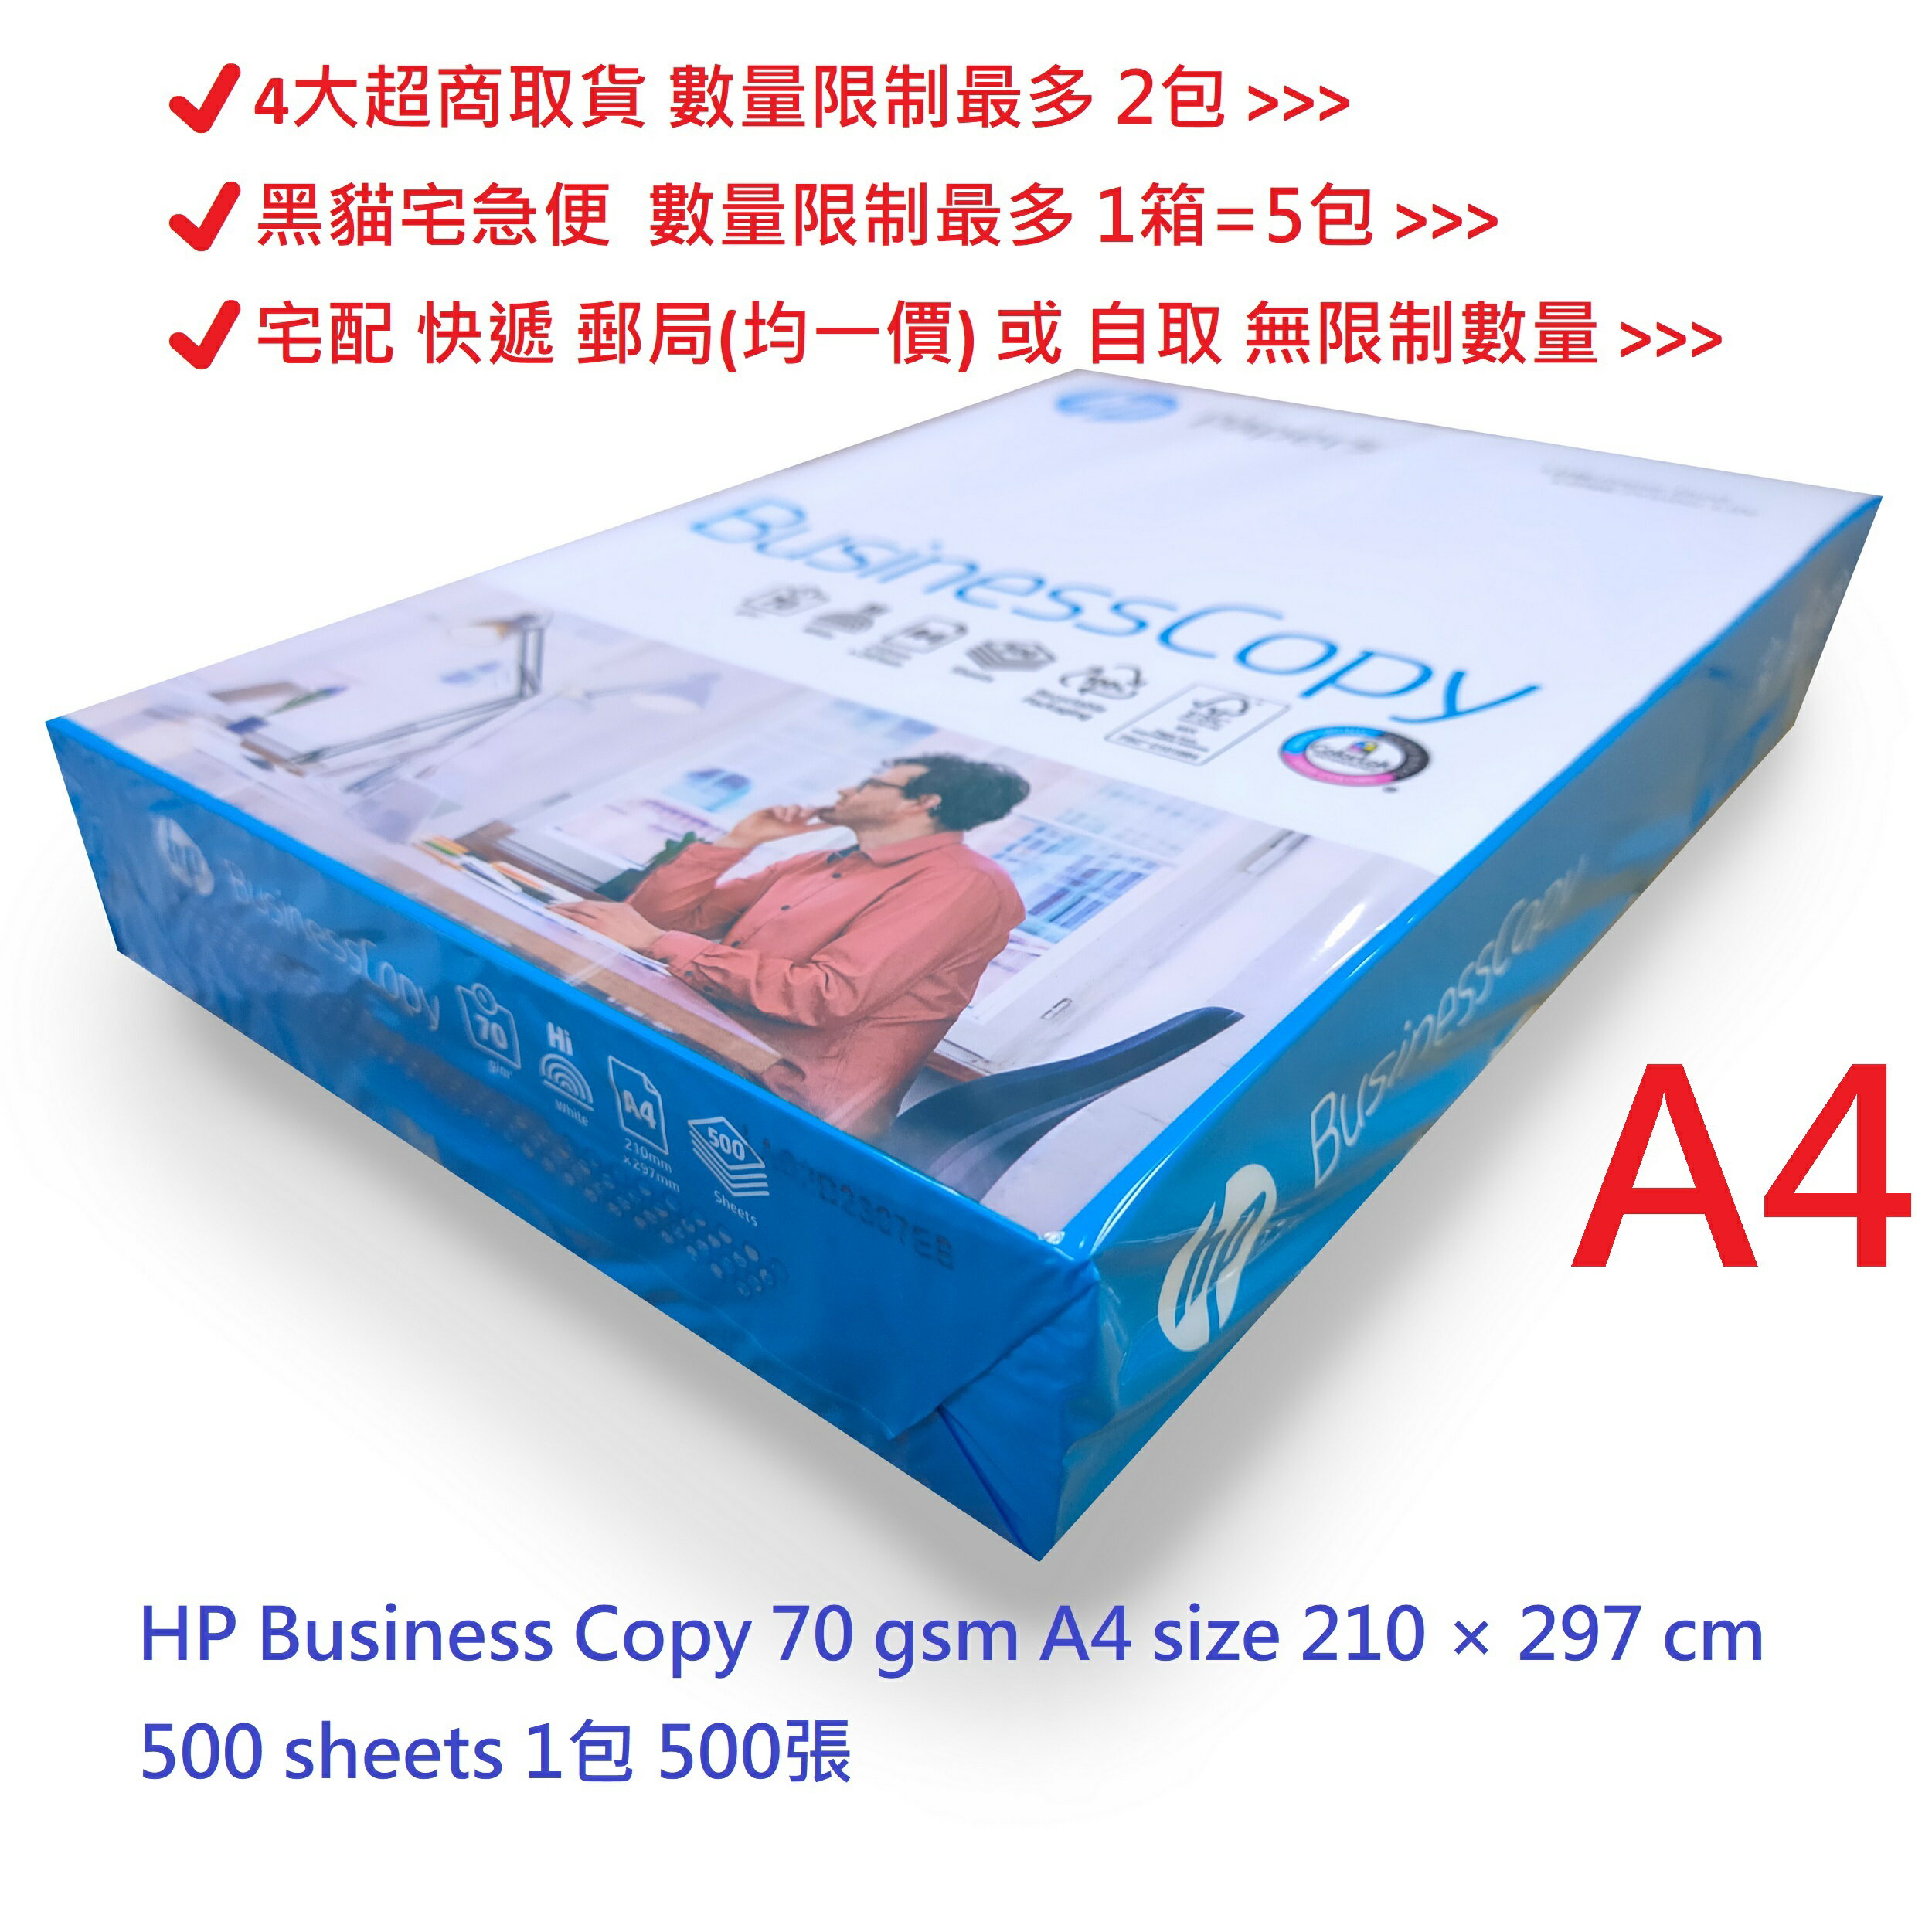 【文具通】HP 惠普 BUSINESS COPY 商用 影印紙 白色 A4 70gsm size 210 × 297mm 500 sheets 1包 500張 含稅價 P1410582 ⛔4大超商取貨 數量限制最多 2包⛔